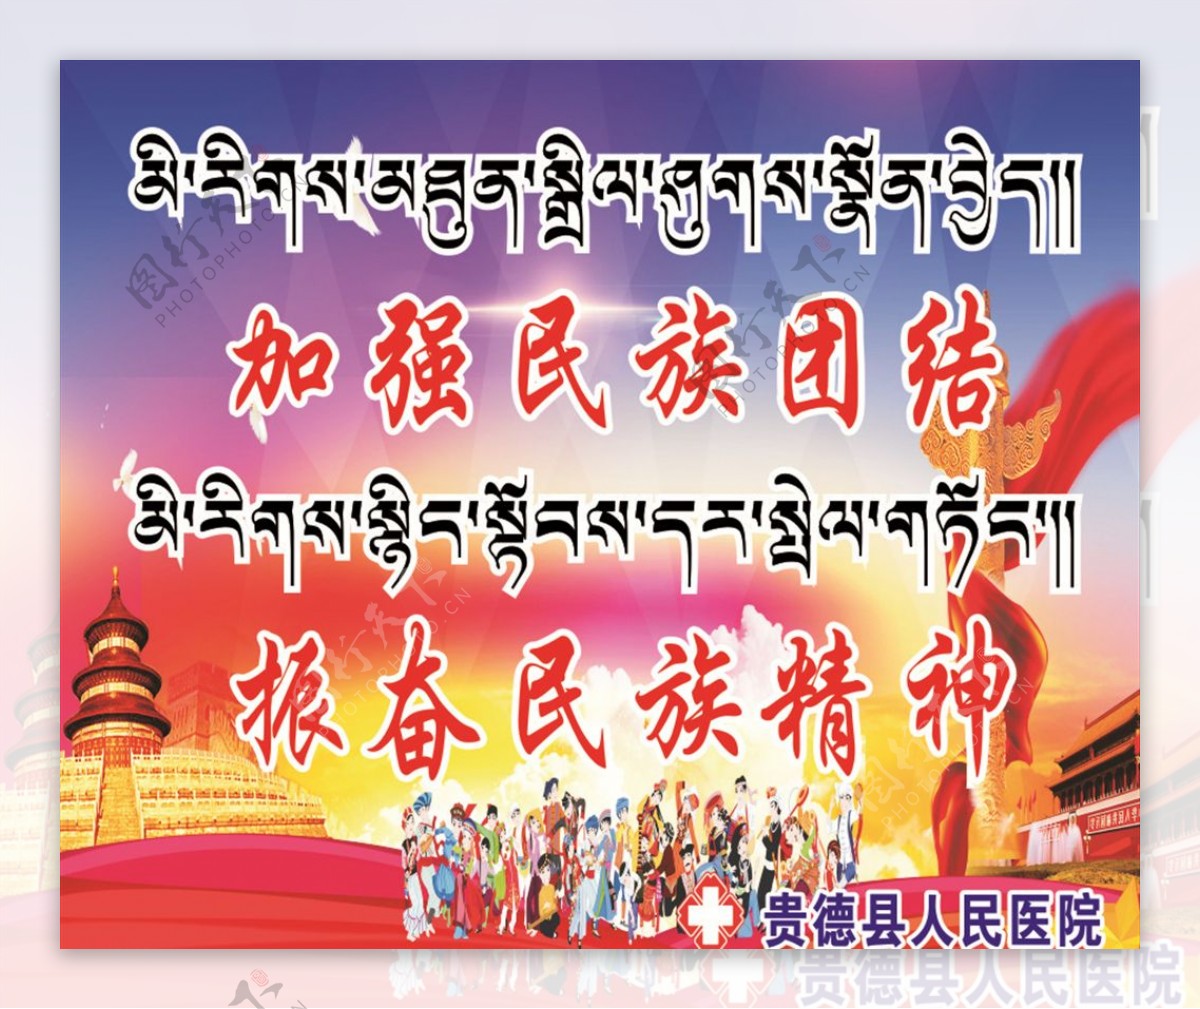 民族团结藏文标语